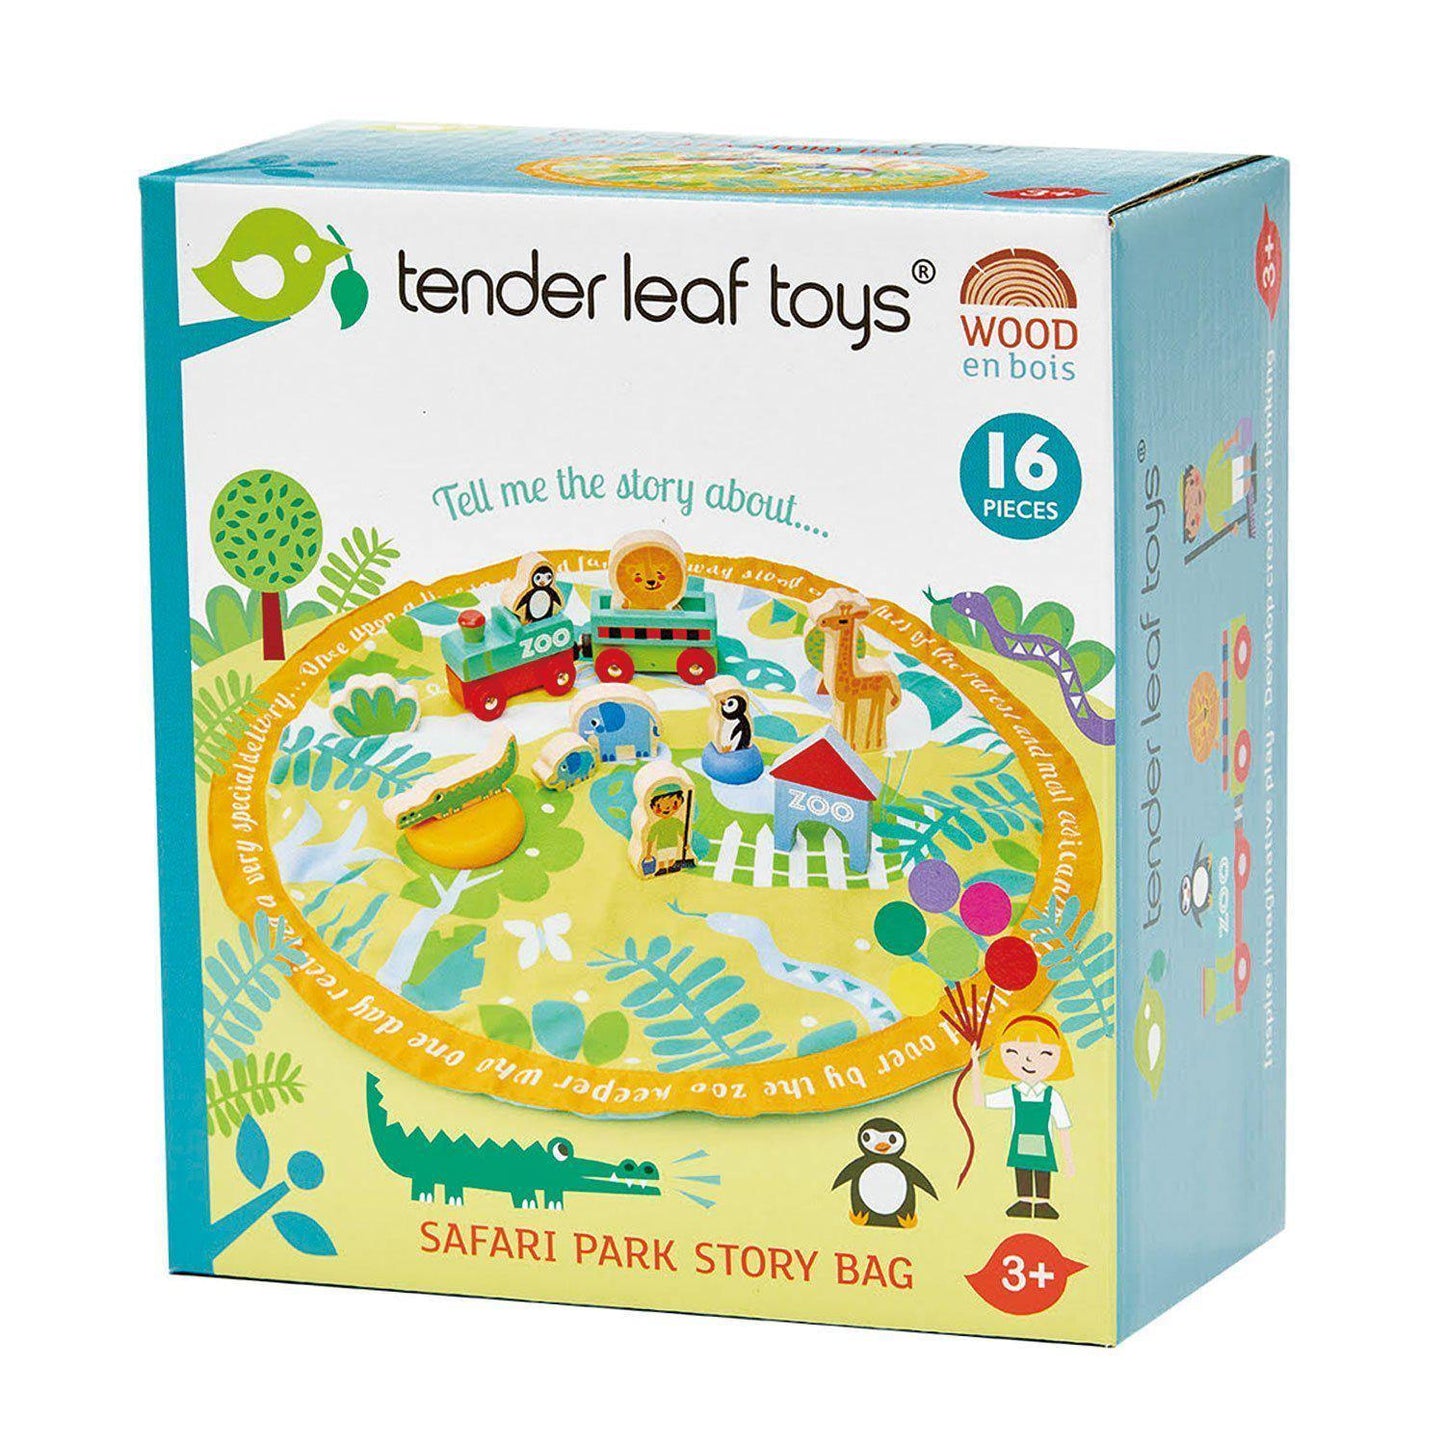 Szafari mesés zsákocska, prémium minőségű fából - Safari park story bag - 16 darab - Tender Leaf Toys-Tender Leaf Toys-1-Játszma.ro - A maradandó élmények boltja